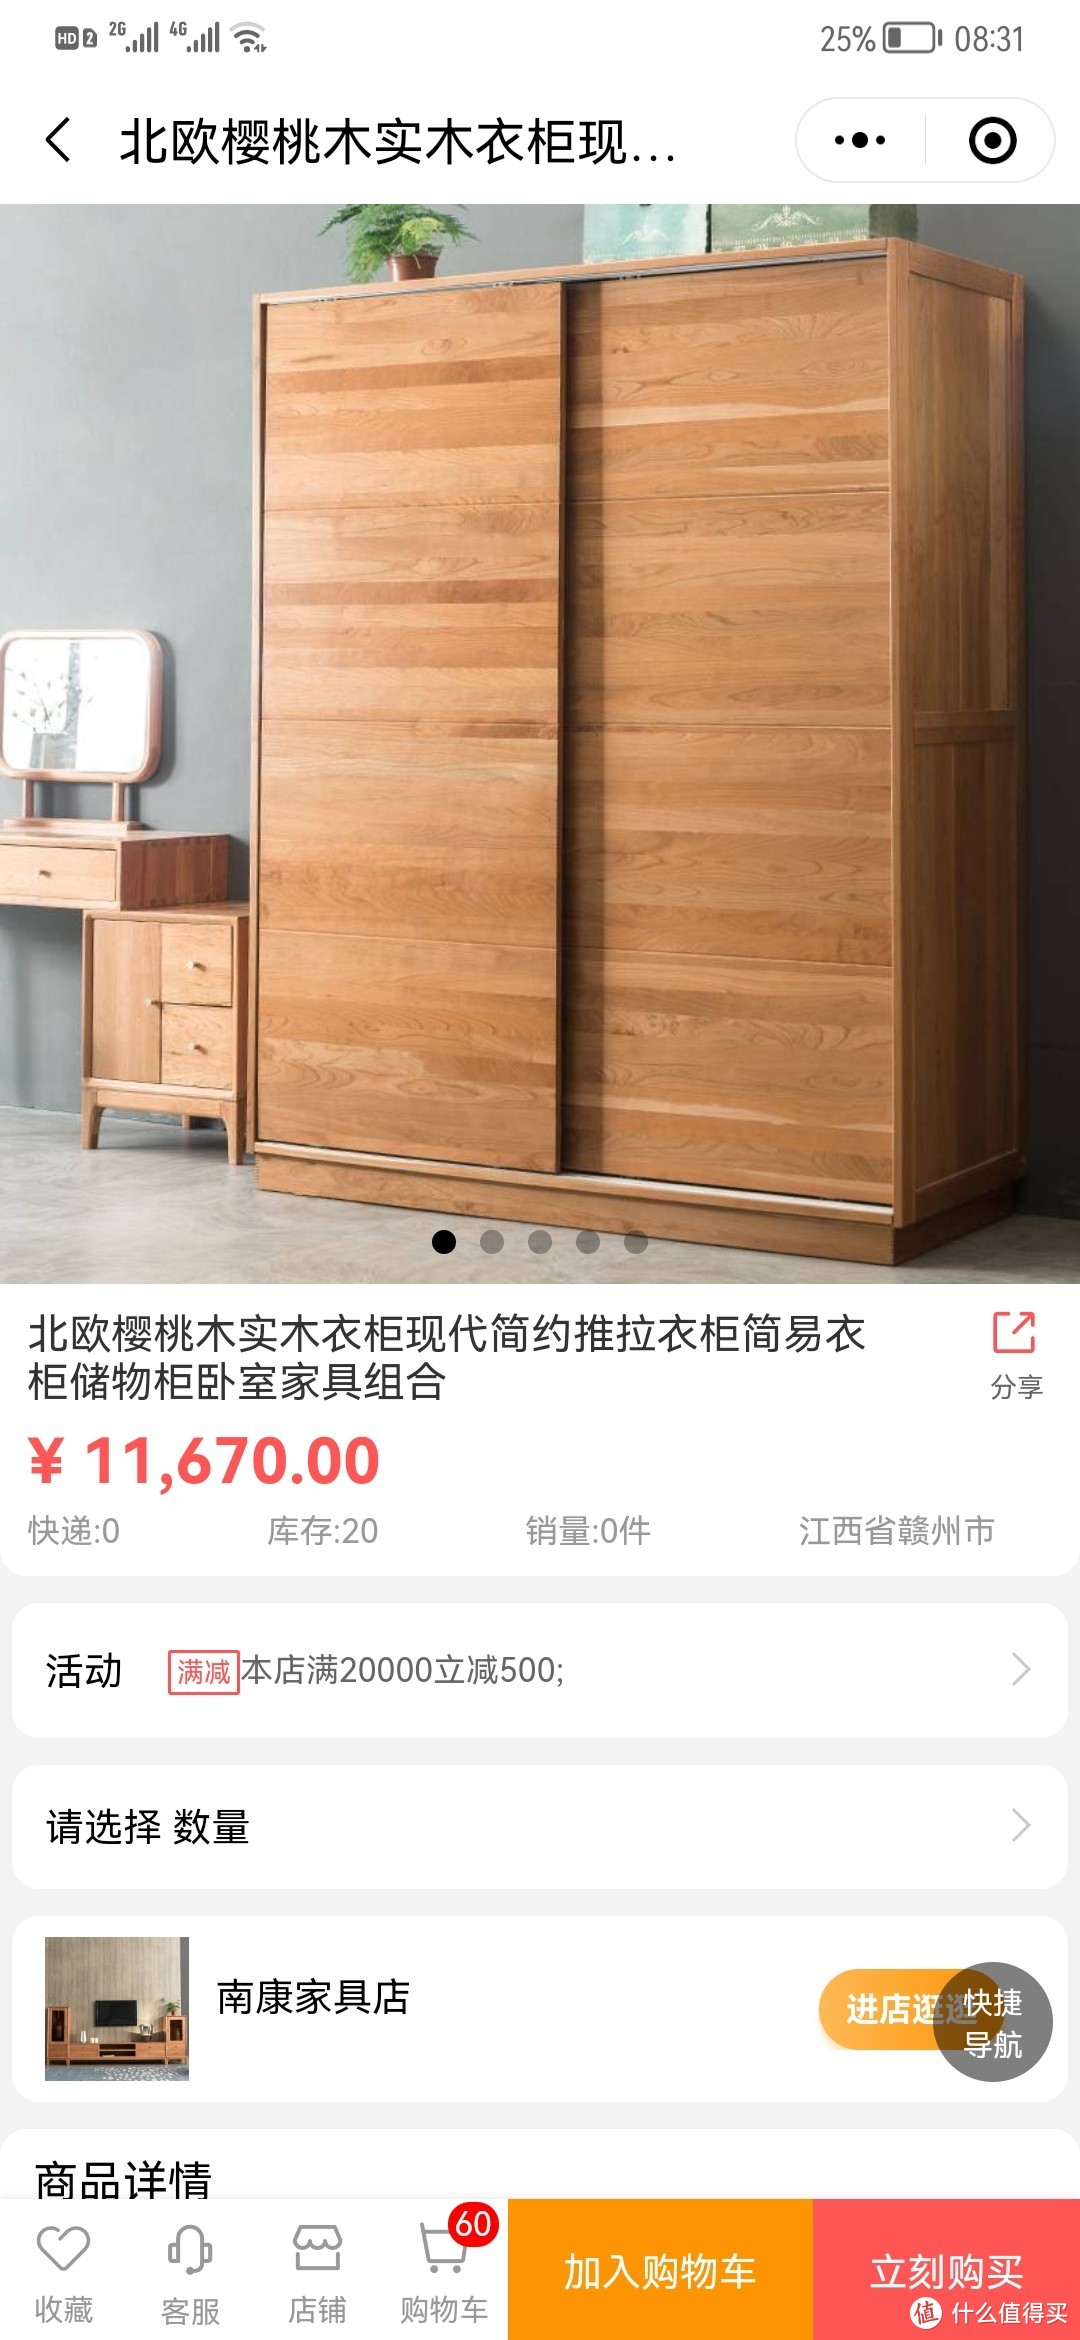 南康厂家直销半价入手的樱桃木衣柜